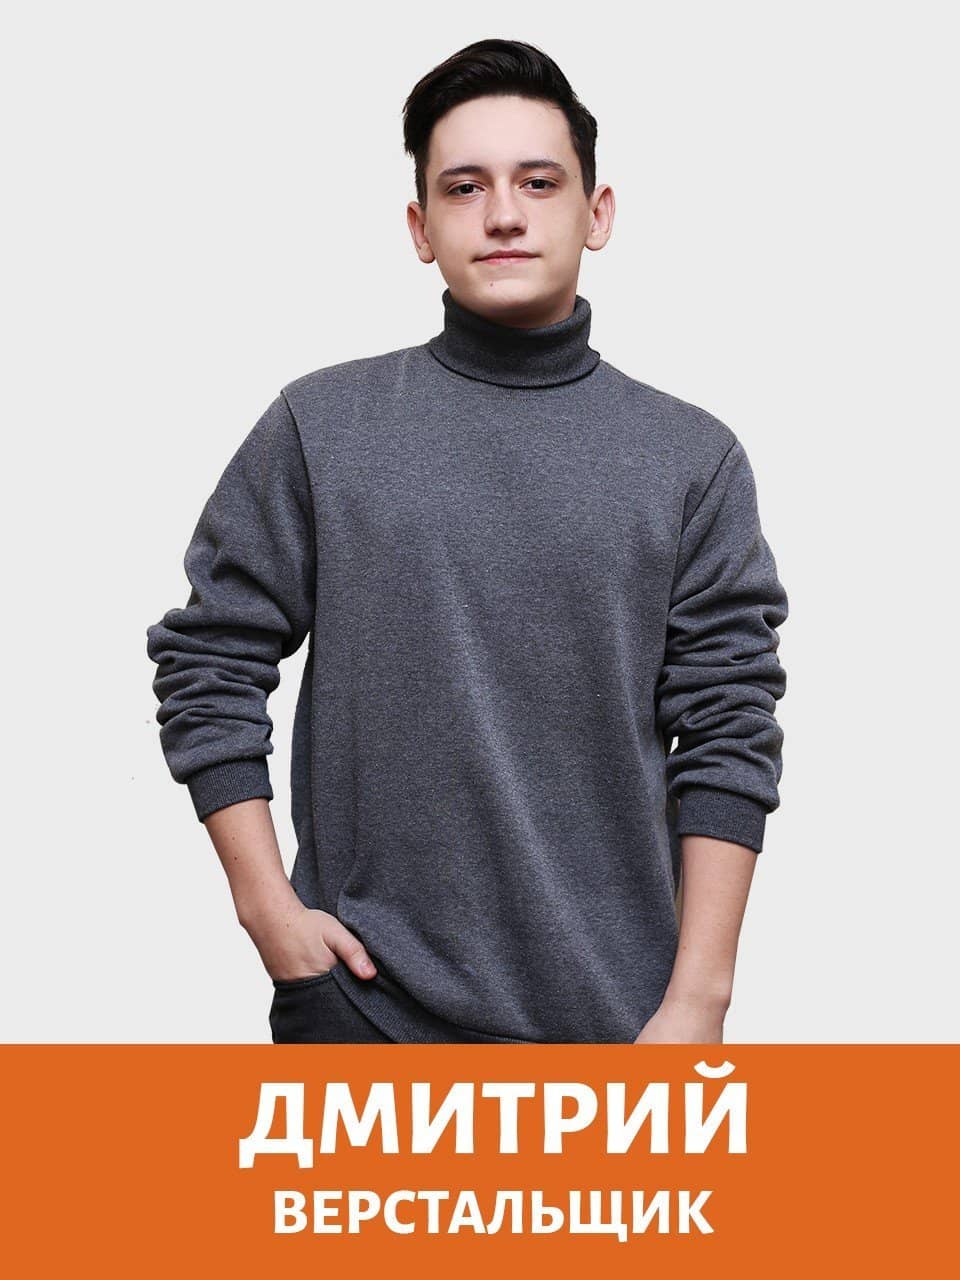 dmitrij verstalshhik - Создание и разработка сайтов в Актобе